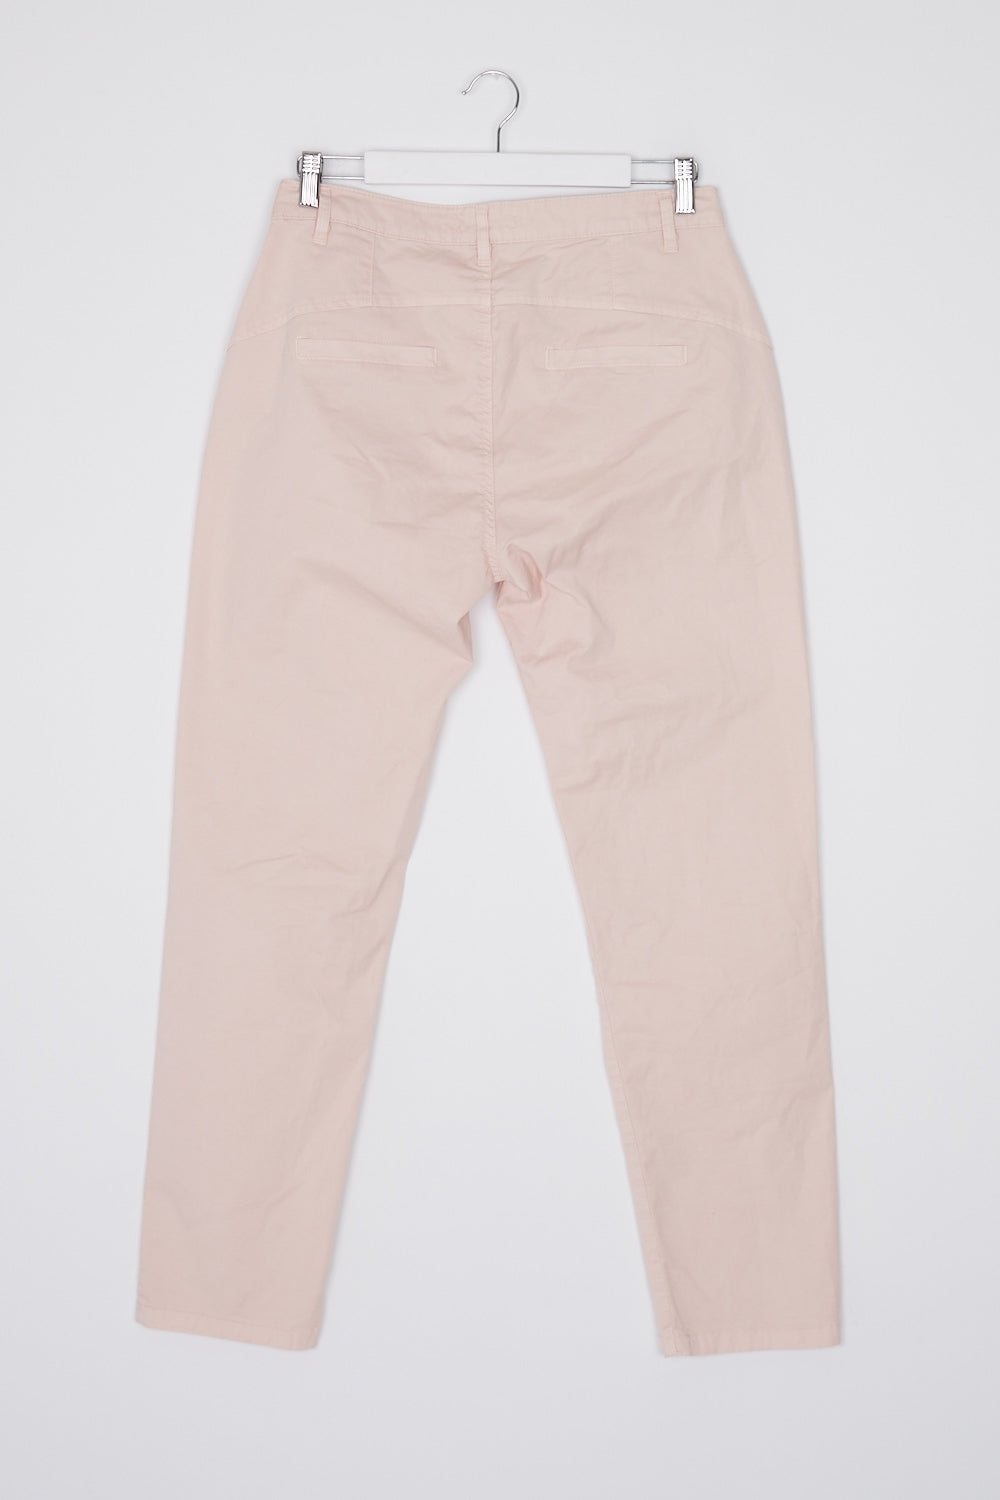 Ridley Pink Pants L